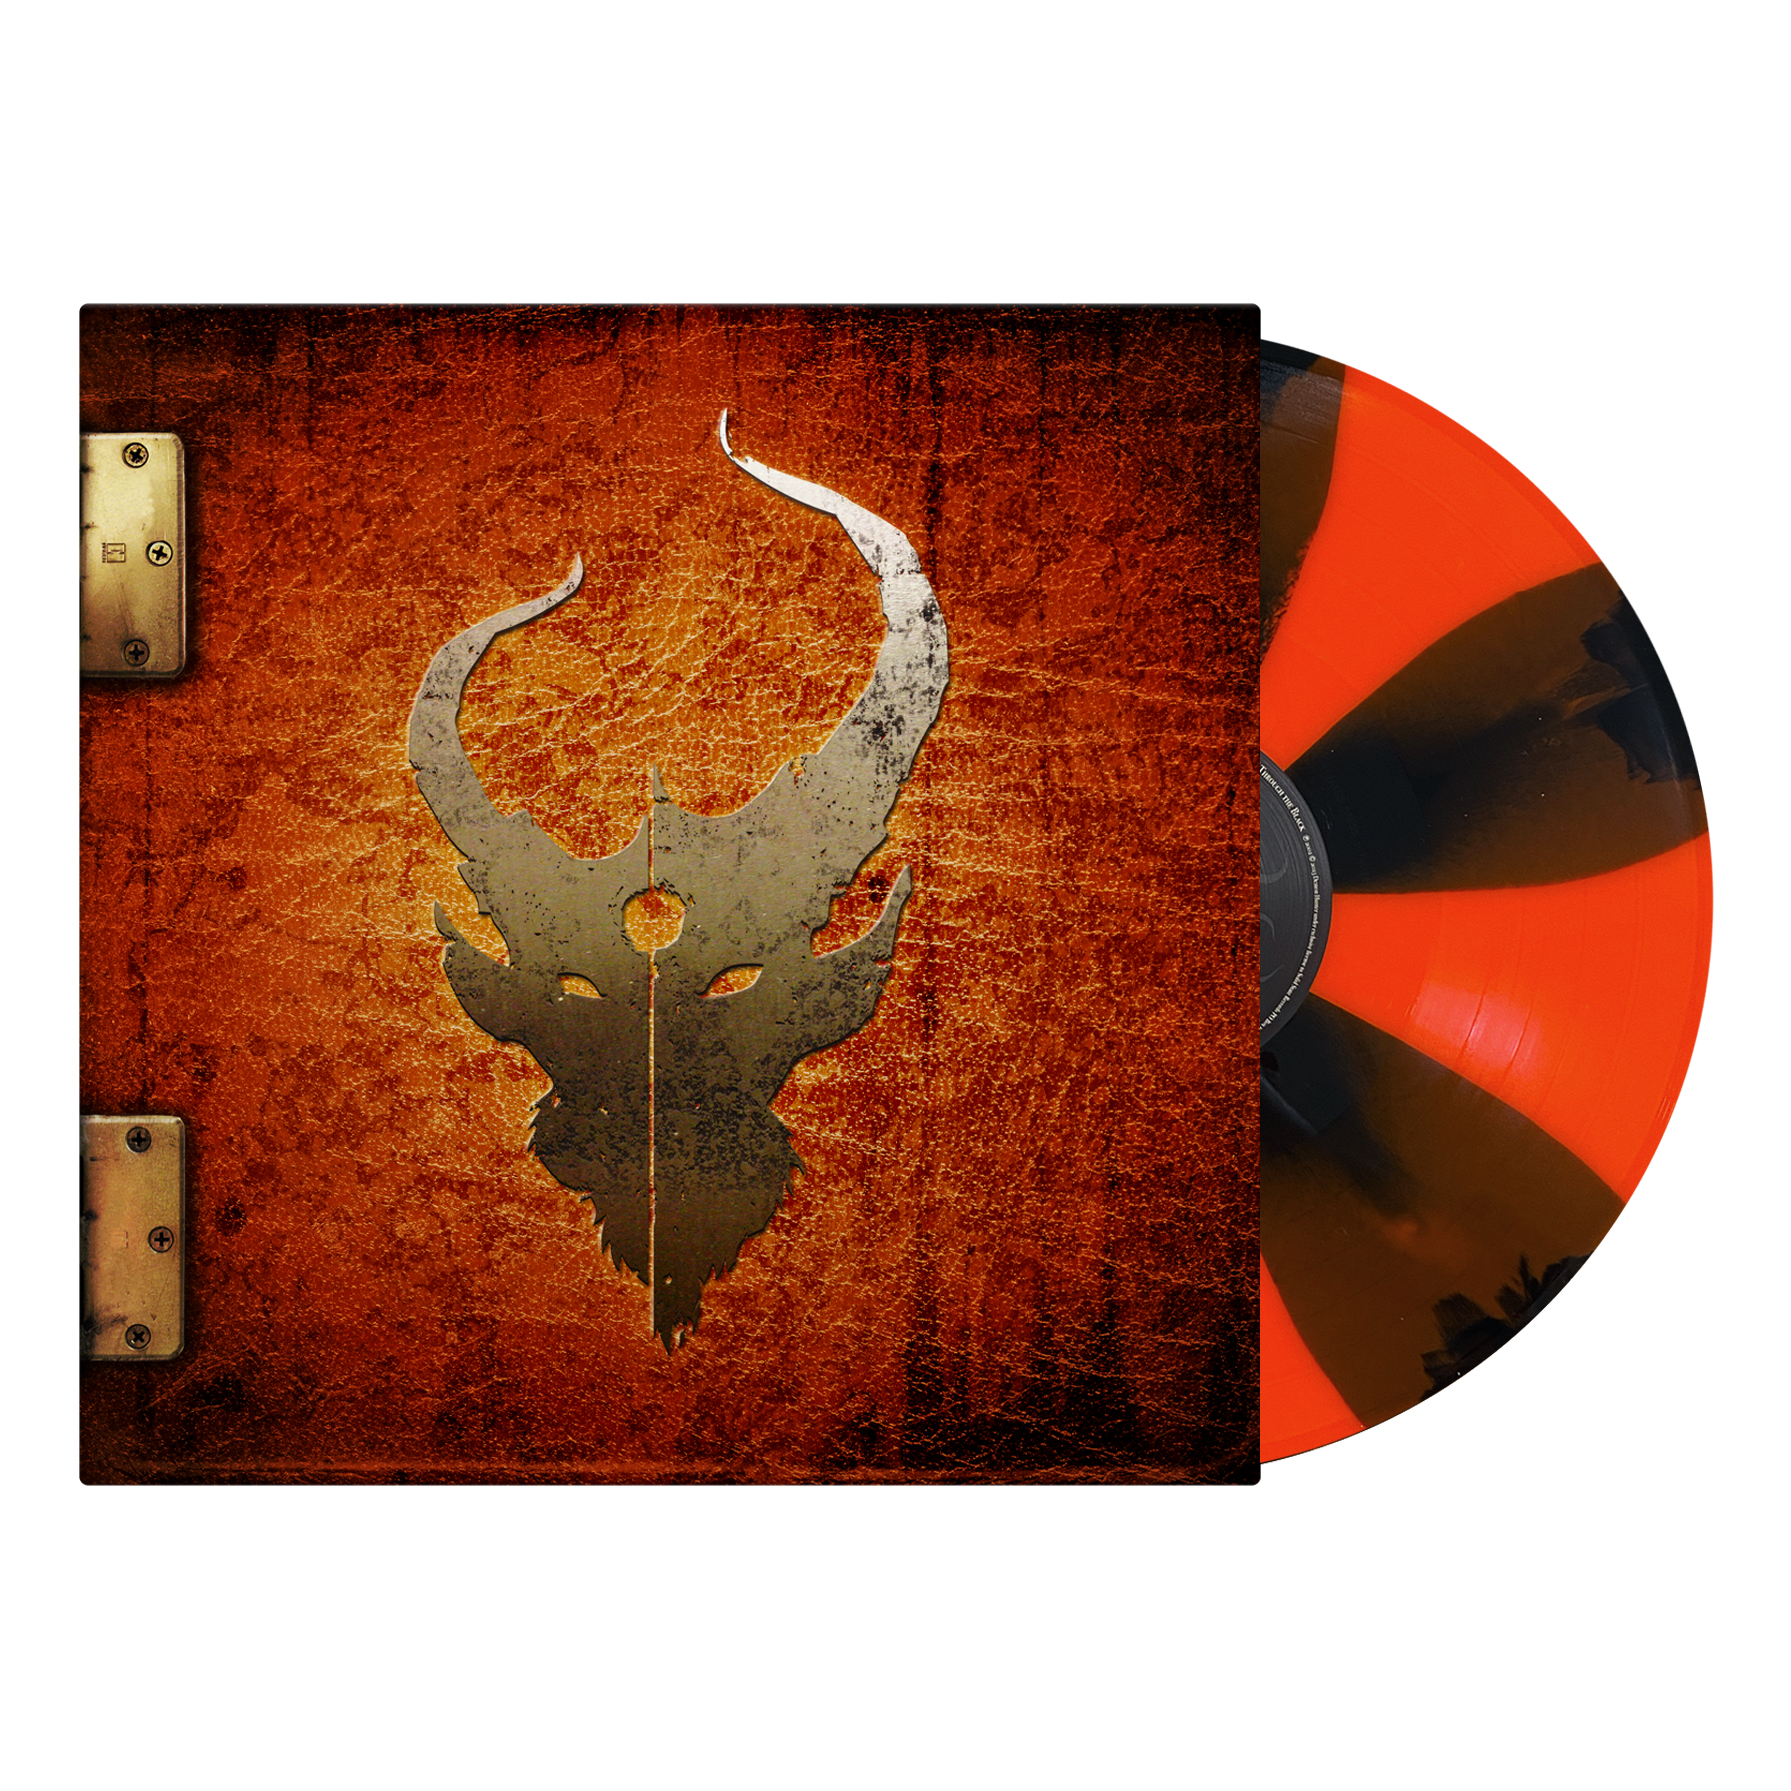 Demon Hunter: Self-titled Vinyl LP (Orange & Black Pinwheel)